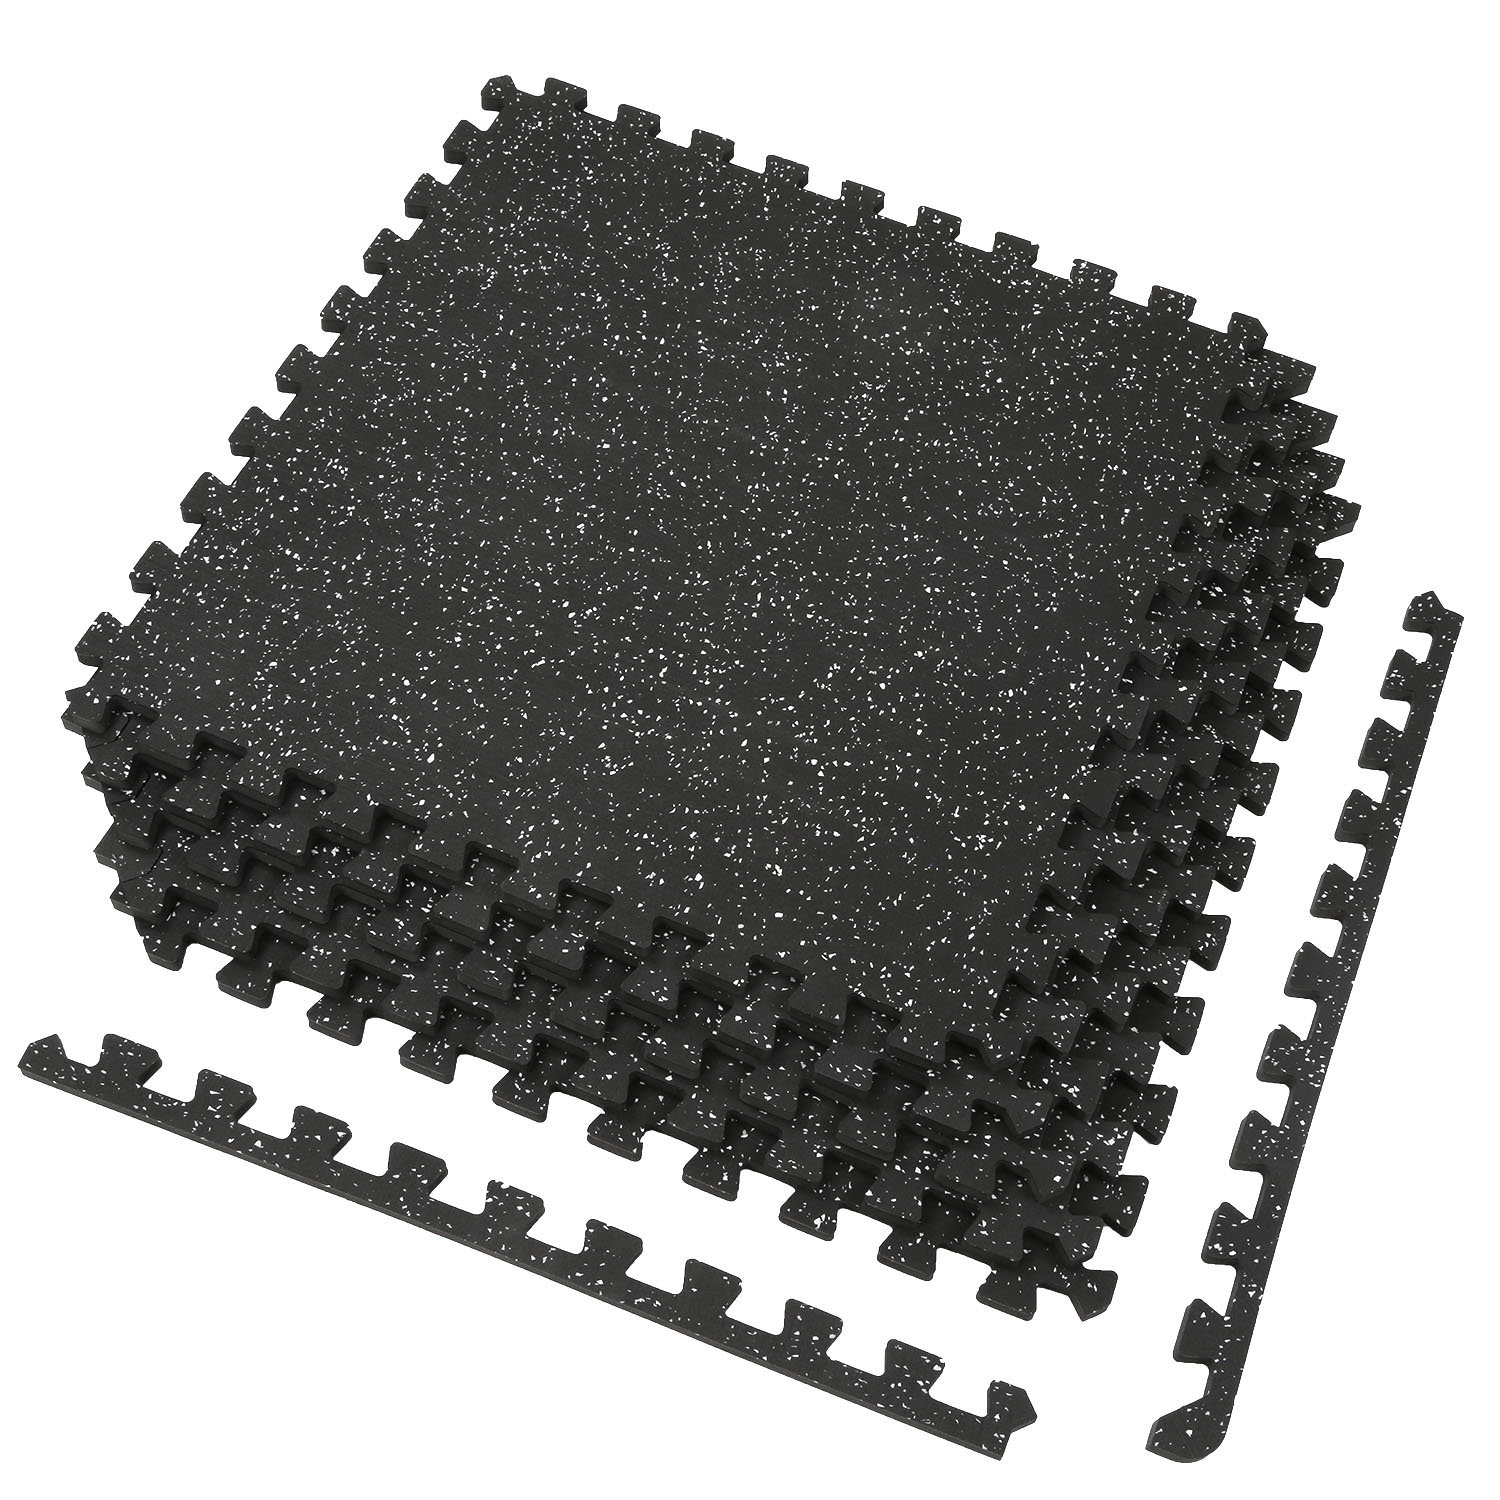 https://assets.wfcdn.com/im/10825283/compr-r85/2195/219585506/12-thick-48-sq-ft-set-of-12-tiles-interlocking-rubber-top-eva-foam-floor-mat.jpg